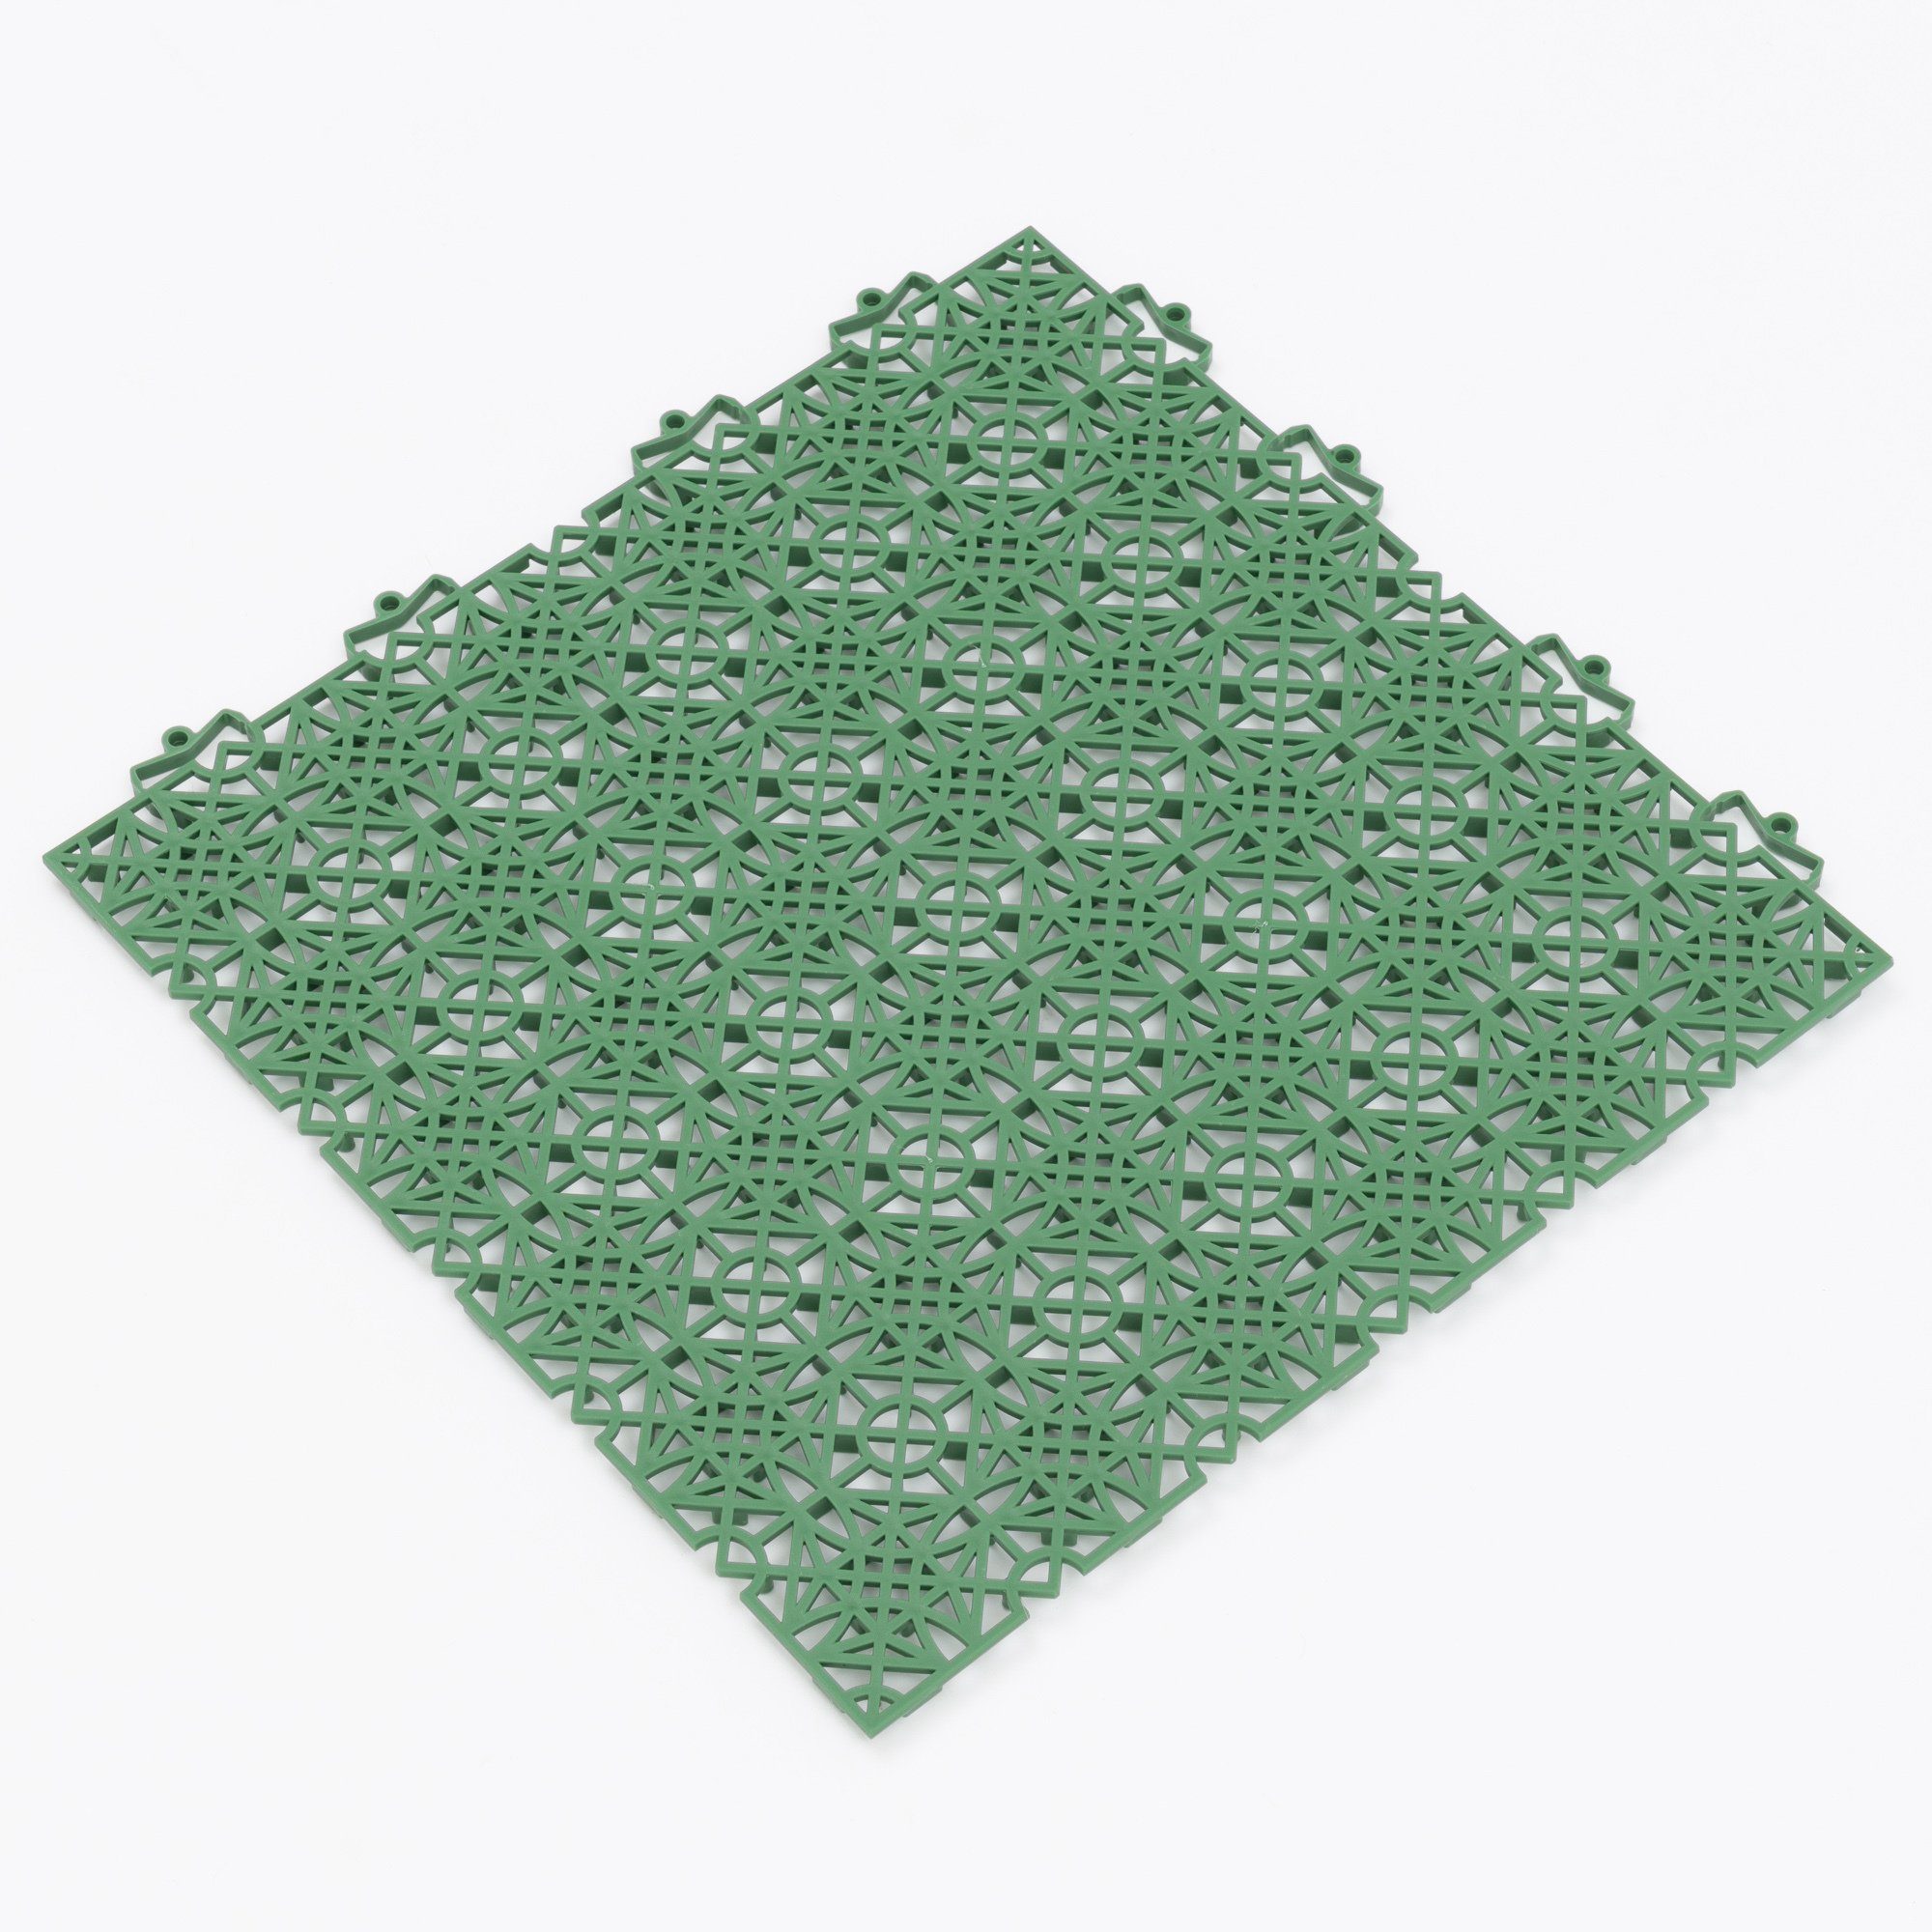 mit Kunststoff Bodenfliese 100% Pergamon Polypropylen Grün Klicksystem 38x38, Bodenfliese Ibiza,